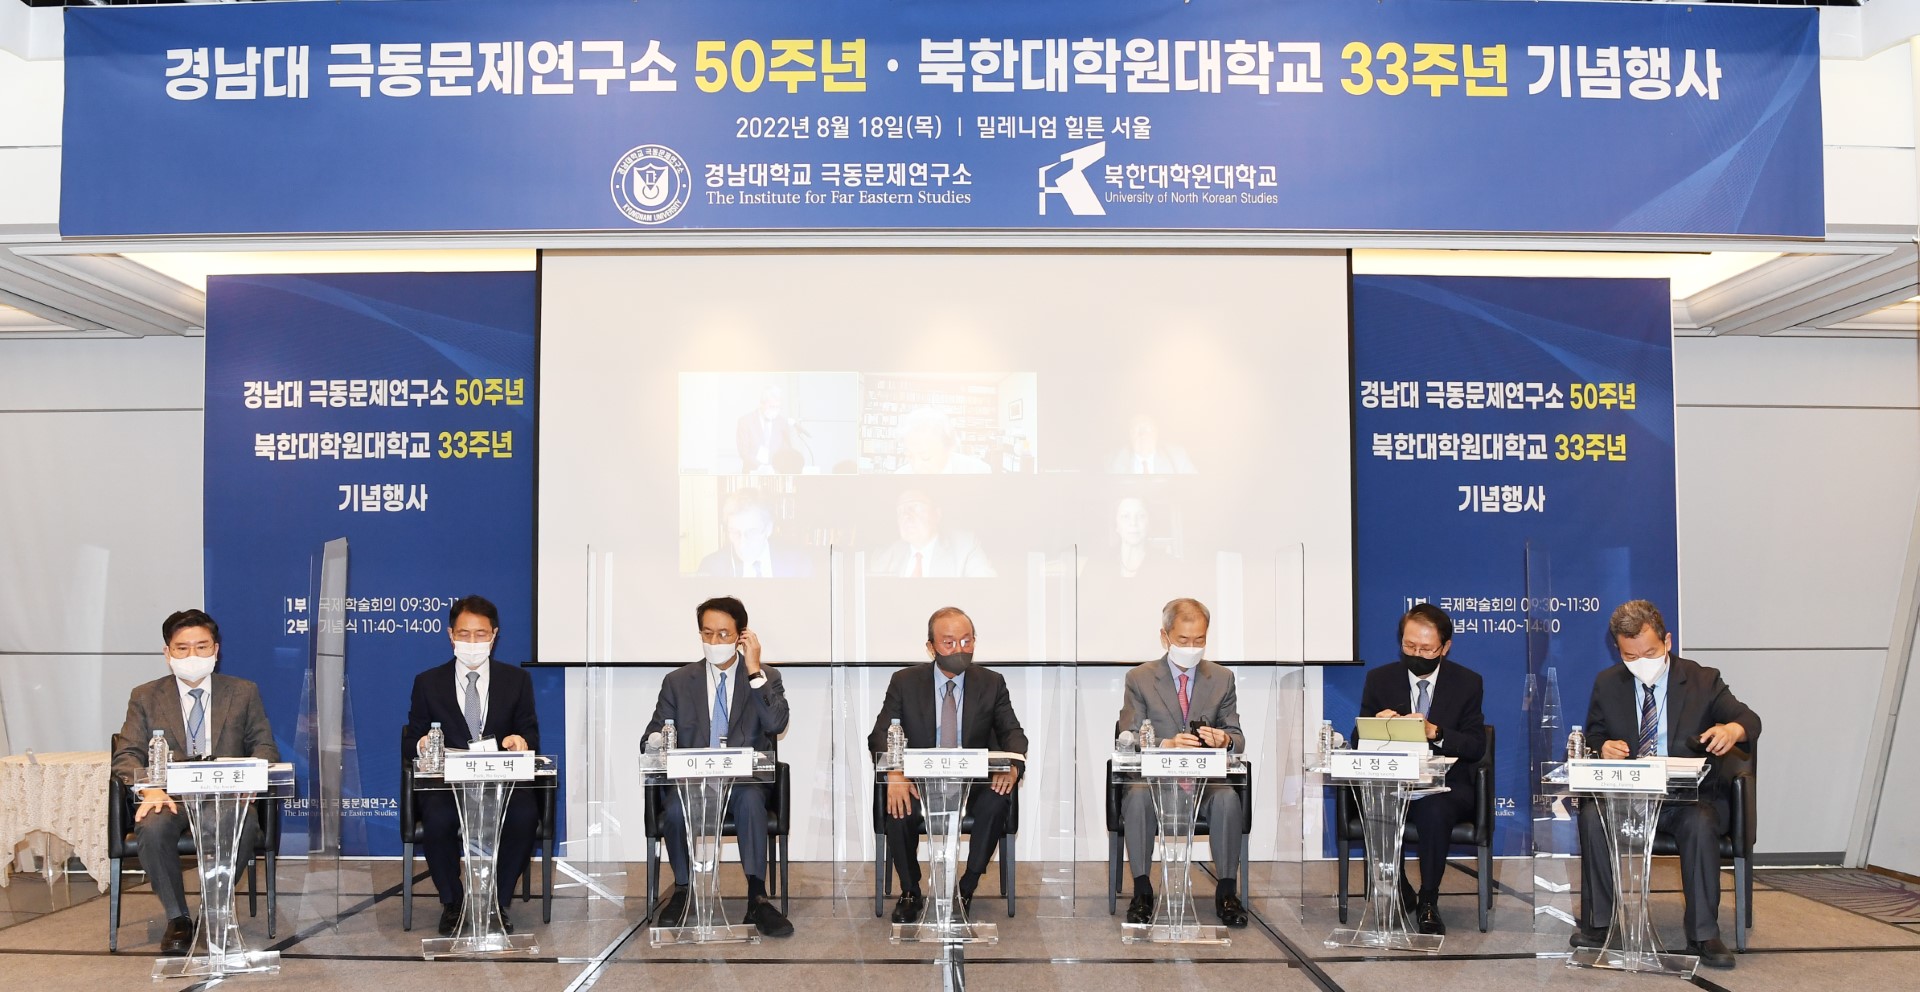 경남대학교 극동문제연구소 50주년 북한대학원대학교 33주년 기념 국제학술회의